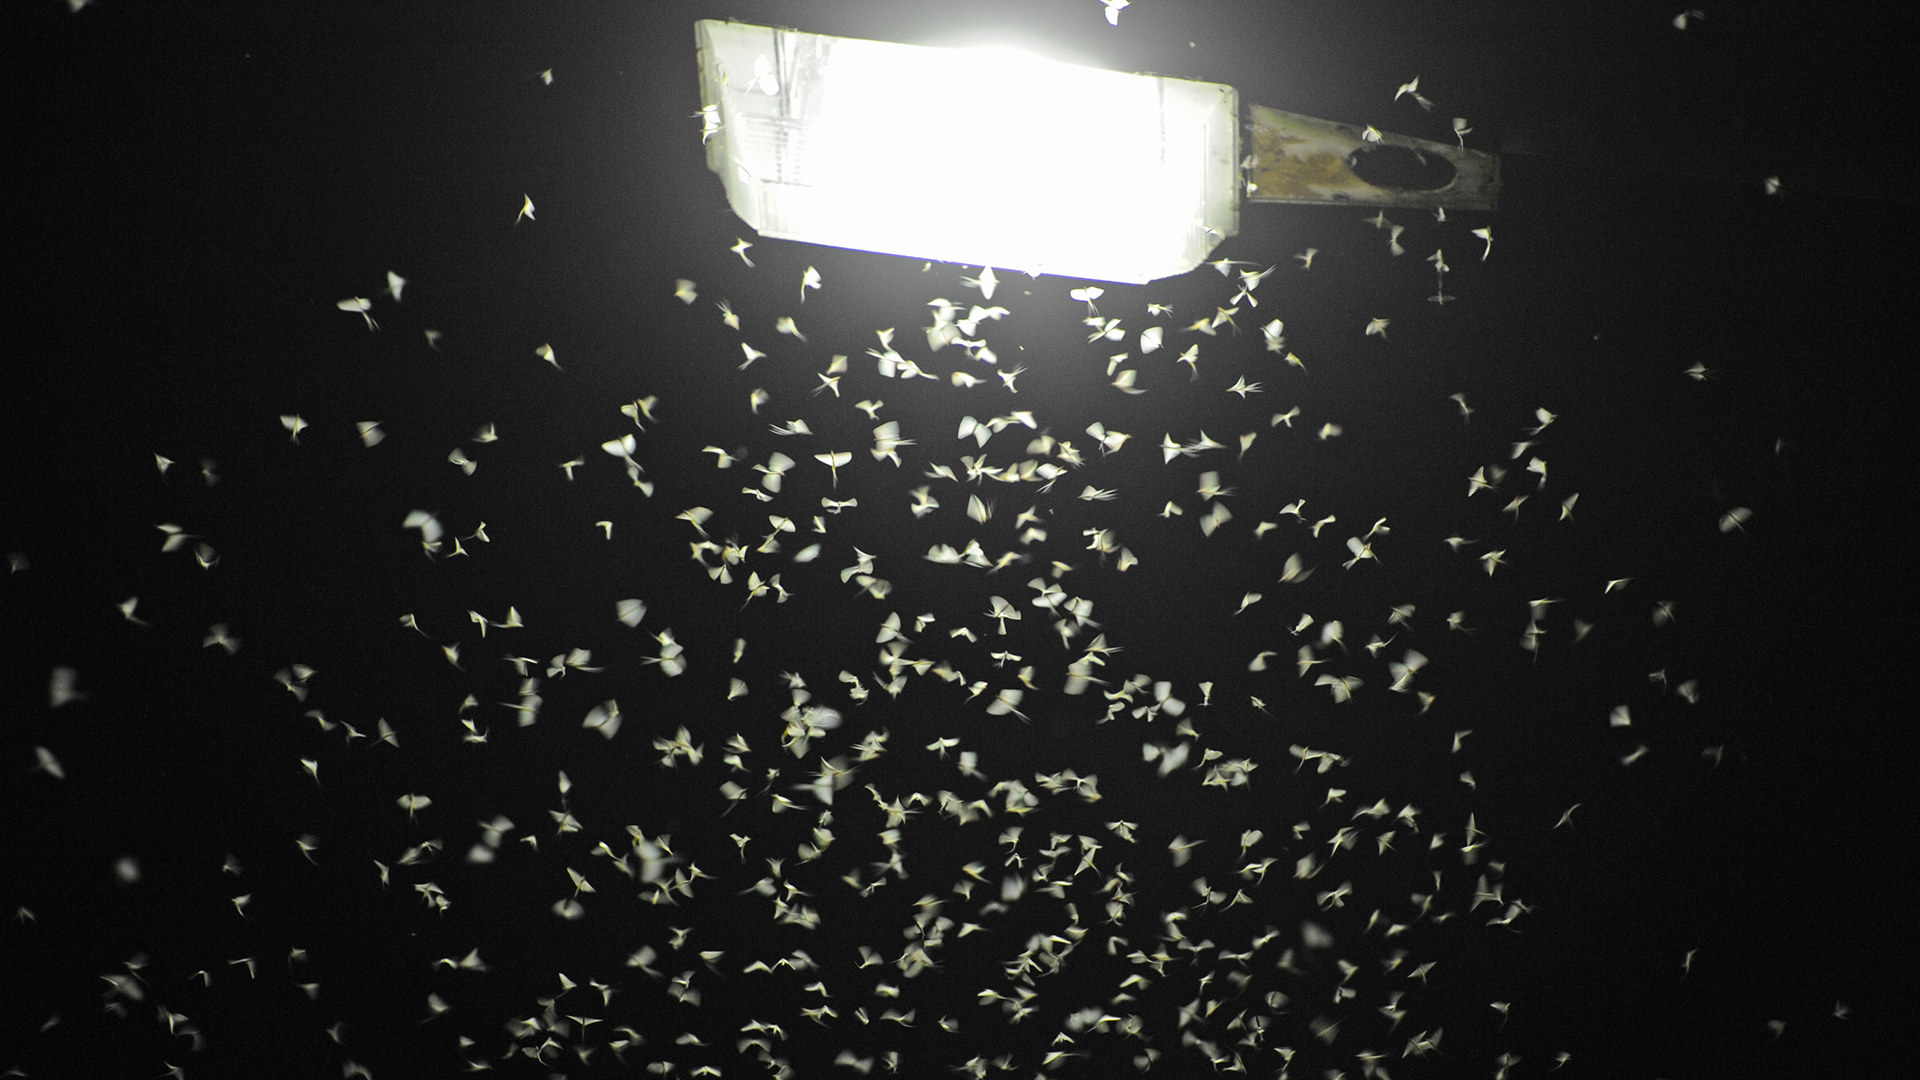 Insekten vor einer Lampe bei Nacht | picture alliance/dpa